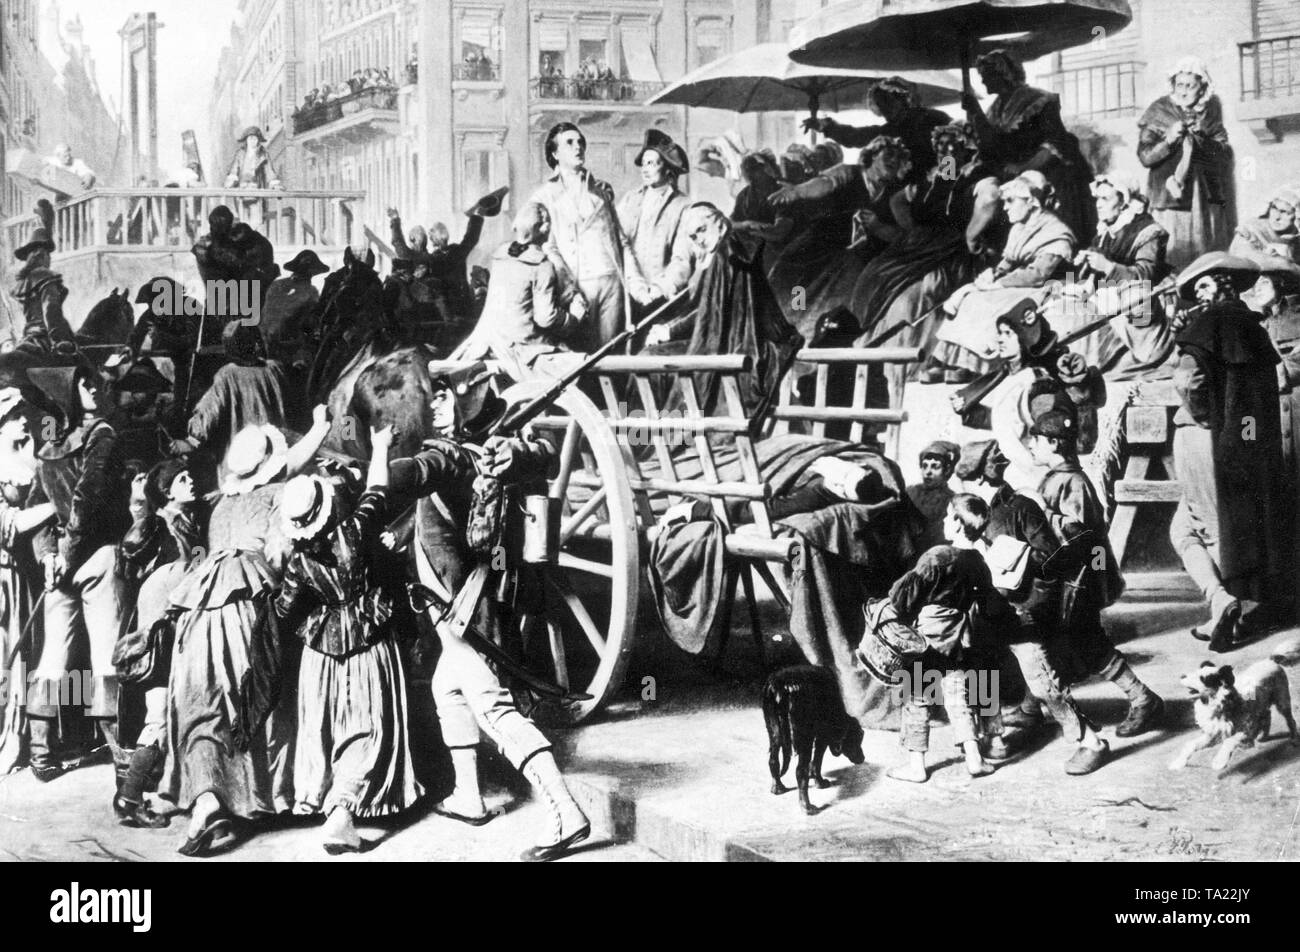 Massenexekutionen durch moderate Republikaner, der sogenannte "girondisten' in den Jahren der 'Terror' zwischen 1793-94. Gemälde von Karl von Piloty mit dem Titel "Die Girondisten auf dem Weg zur Hinrichtung". Stockfoto